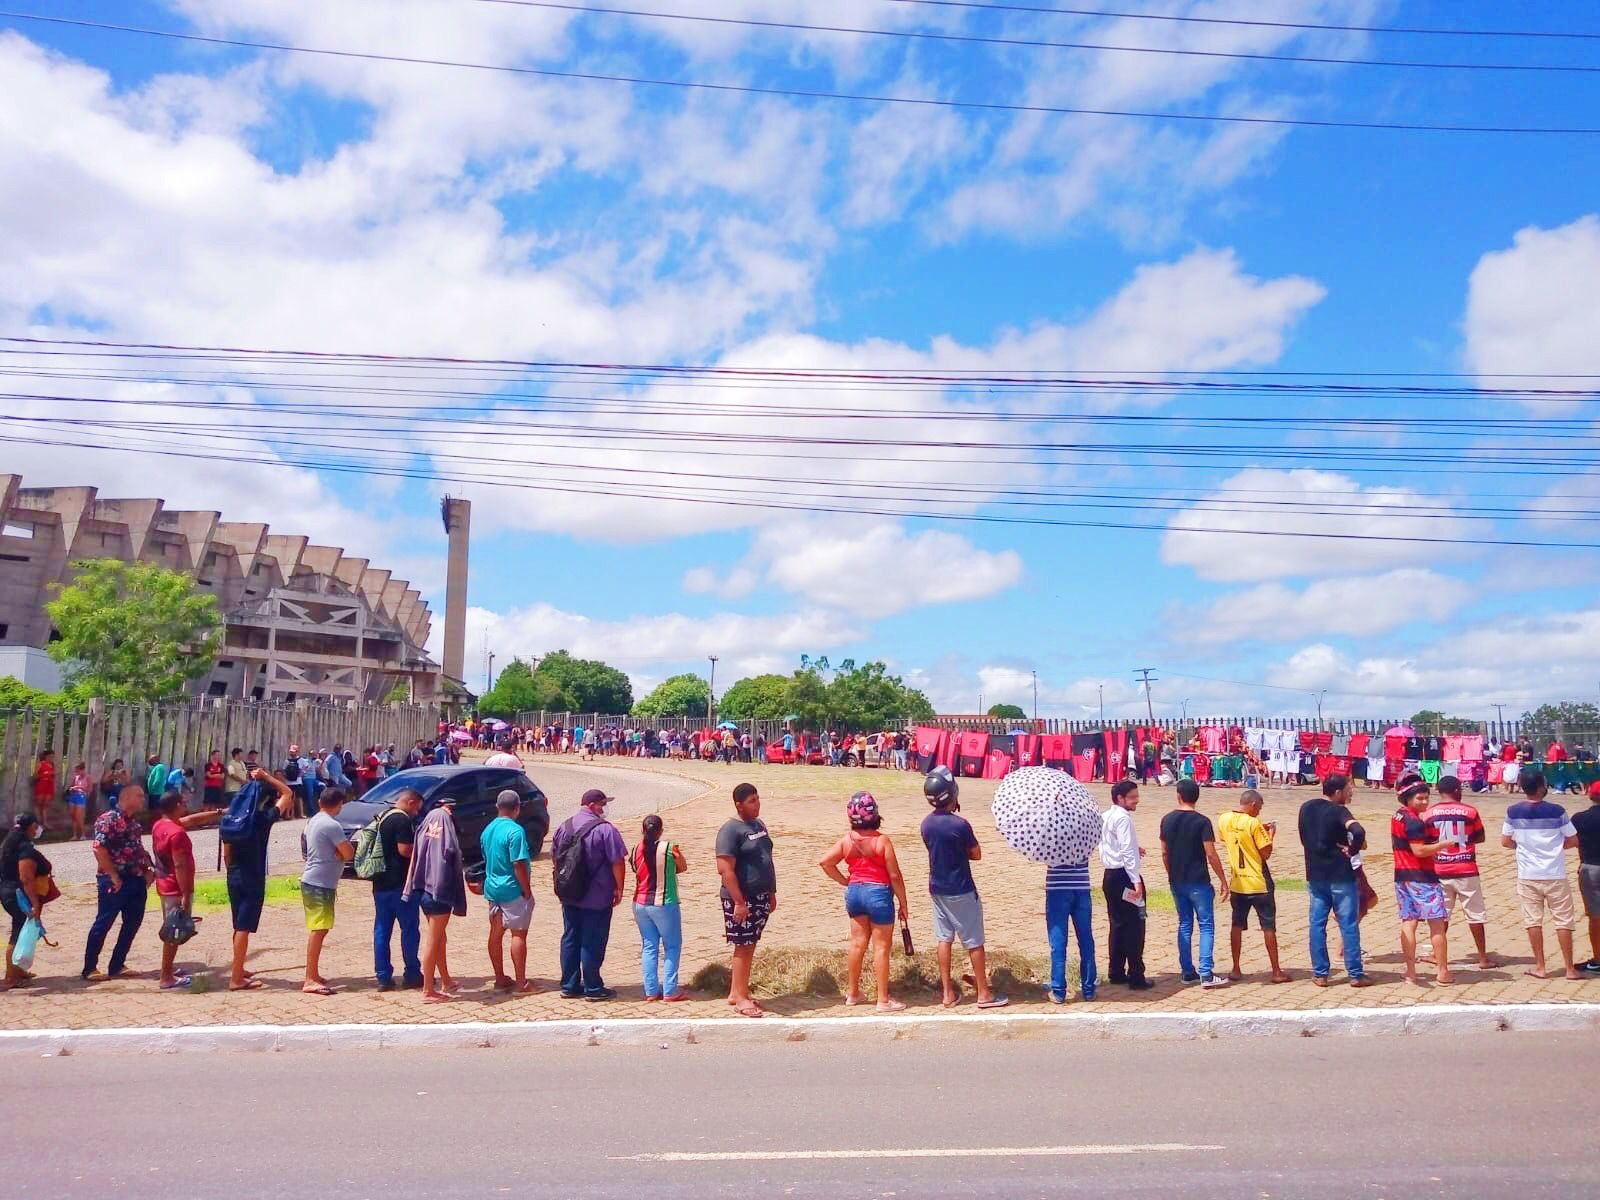 Torcida do Flamengo faz longa fila por ingressos para duelo contra o Altos, no Piauí